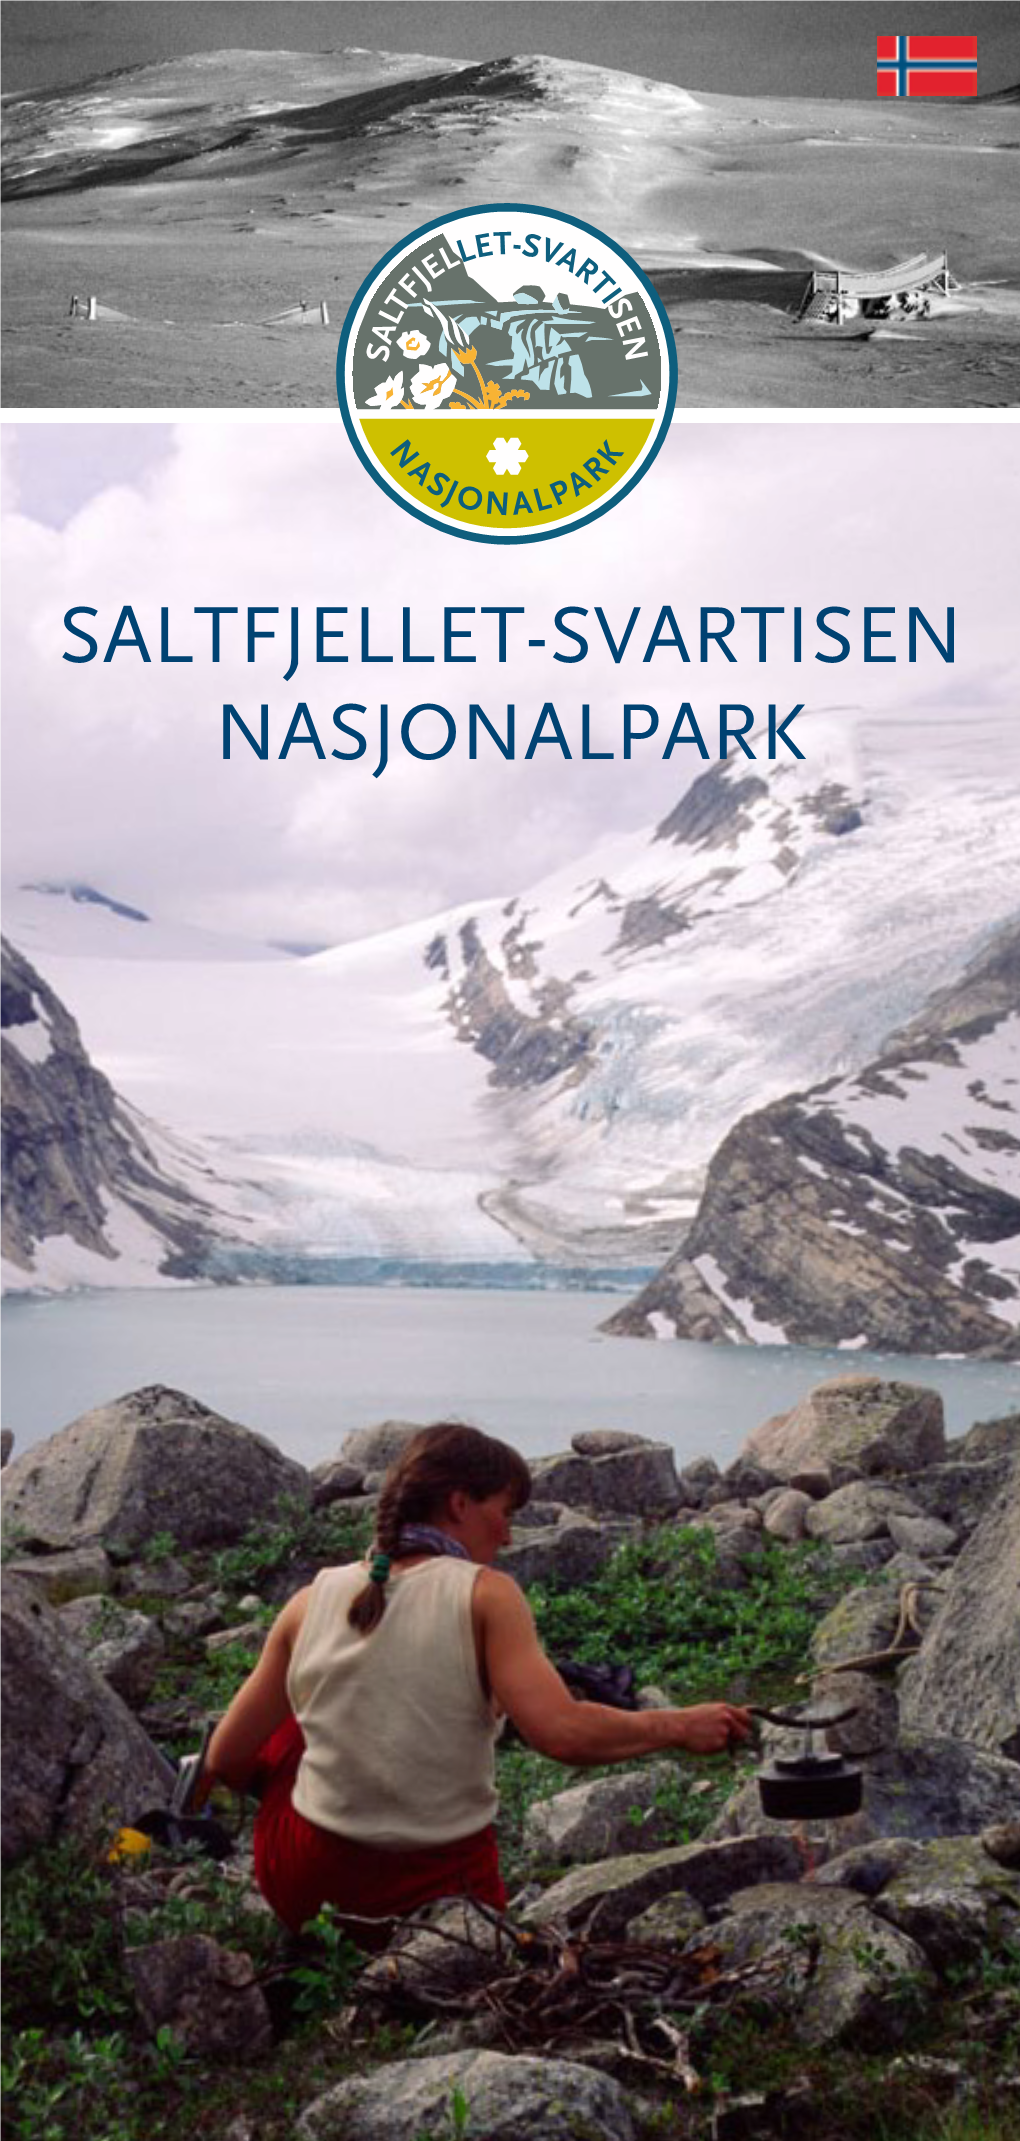 Saltfjellet-Svartisen Nasjonalpark 2° 3° Saltfjellet-Svartisen Nasjonalpark Saltfjellet-Svartisen Nasjonalpark